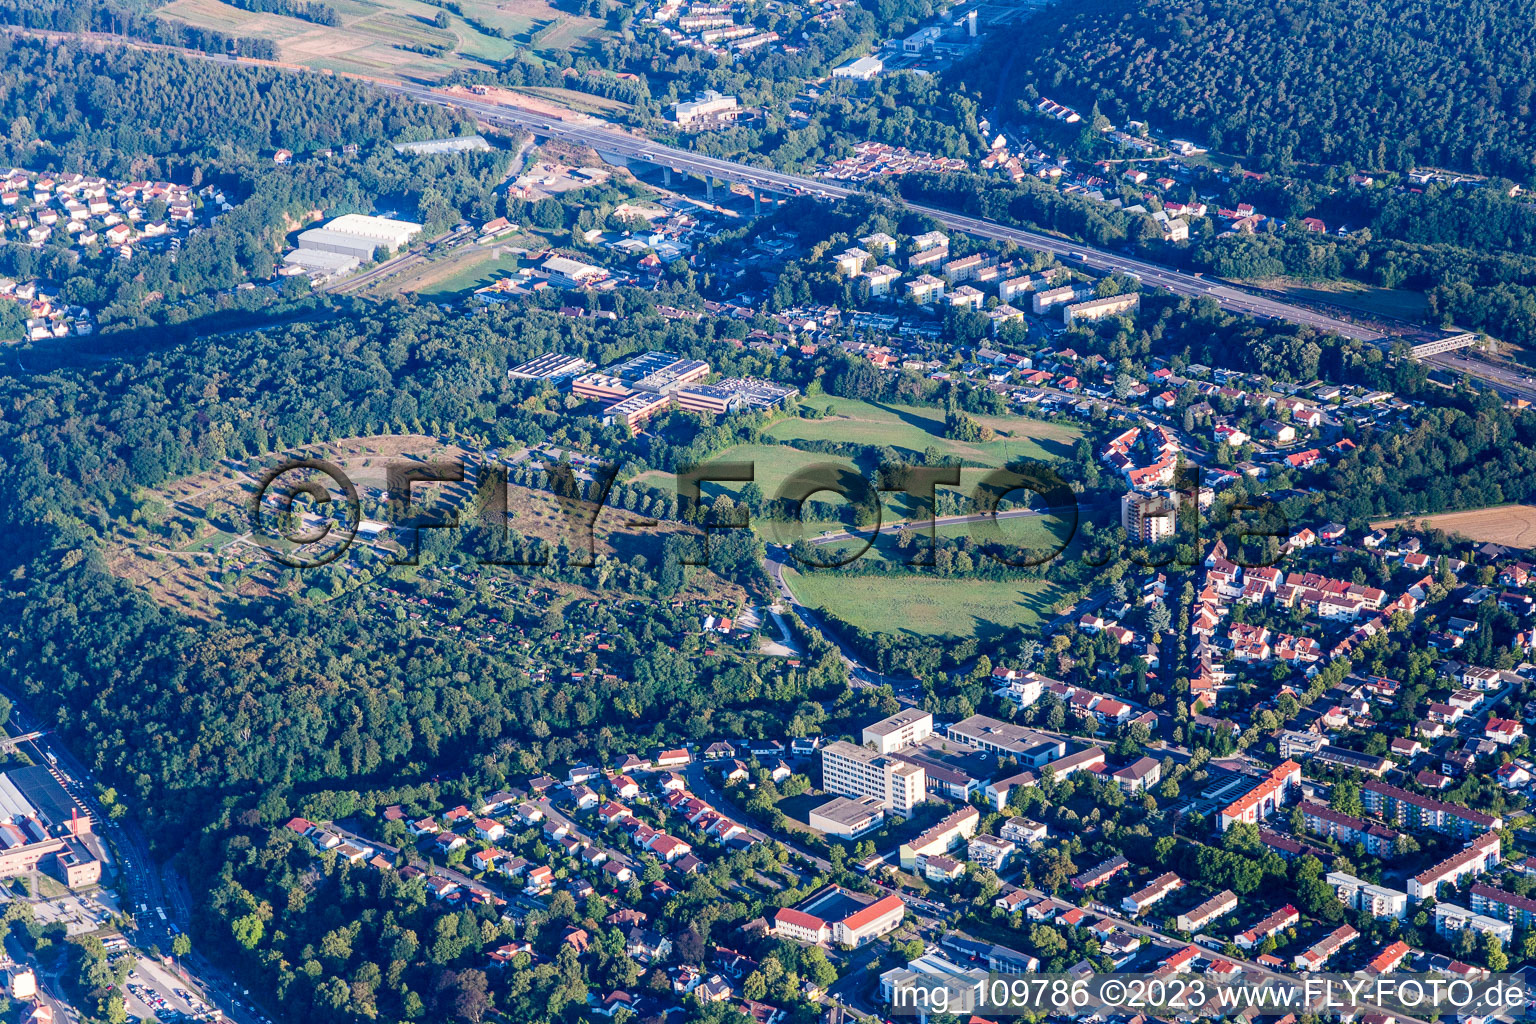 Kaiserslautern im Bundesland Rheinland-Pfalz, Deutschland aus der Luft betrachtet